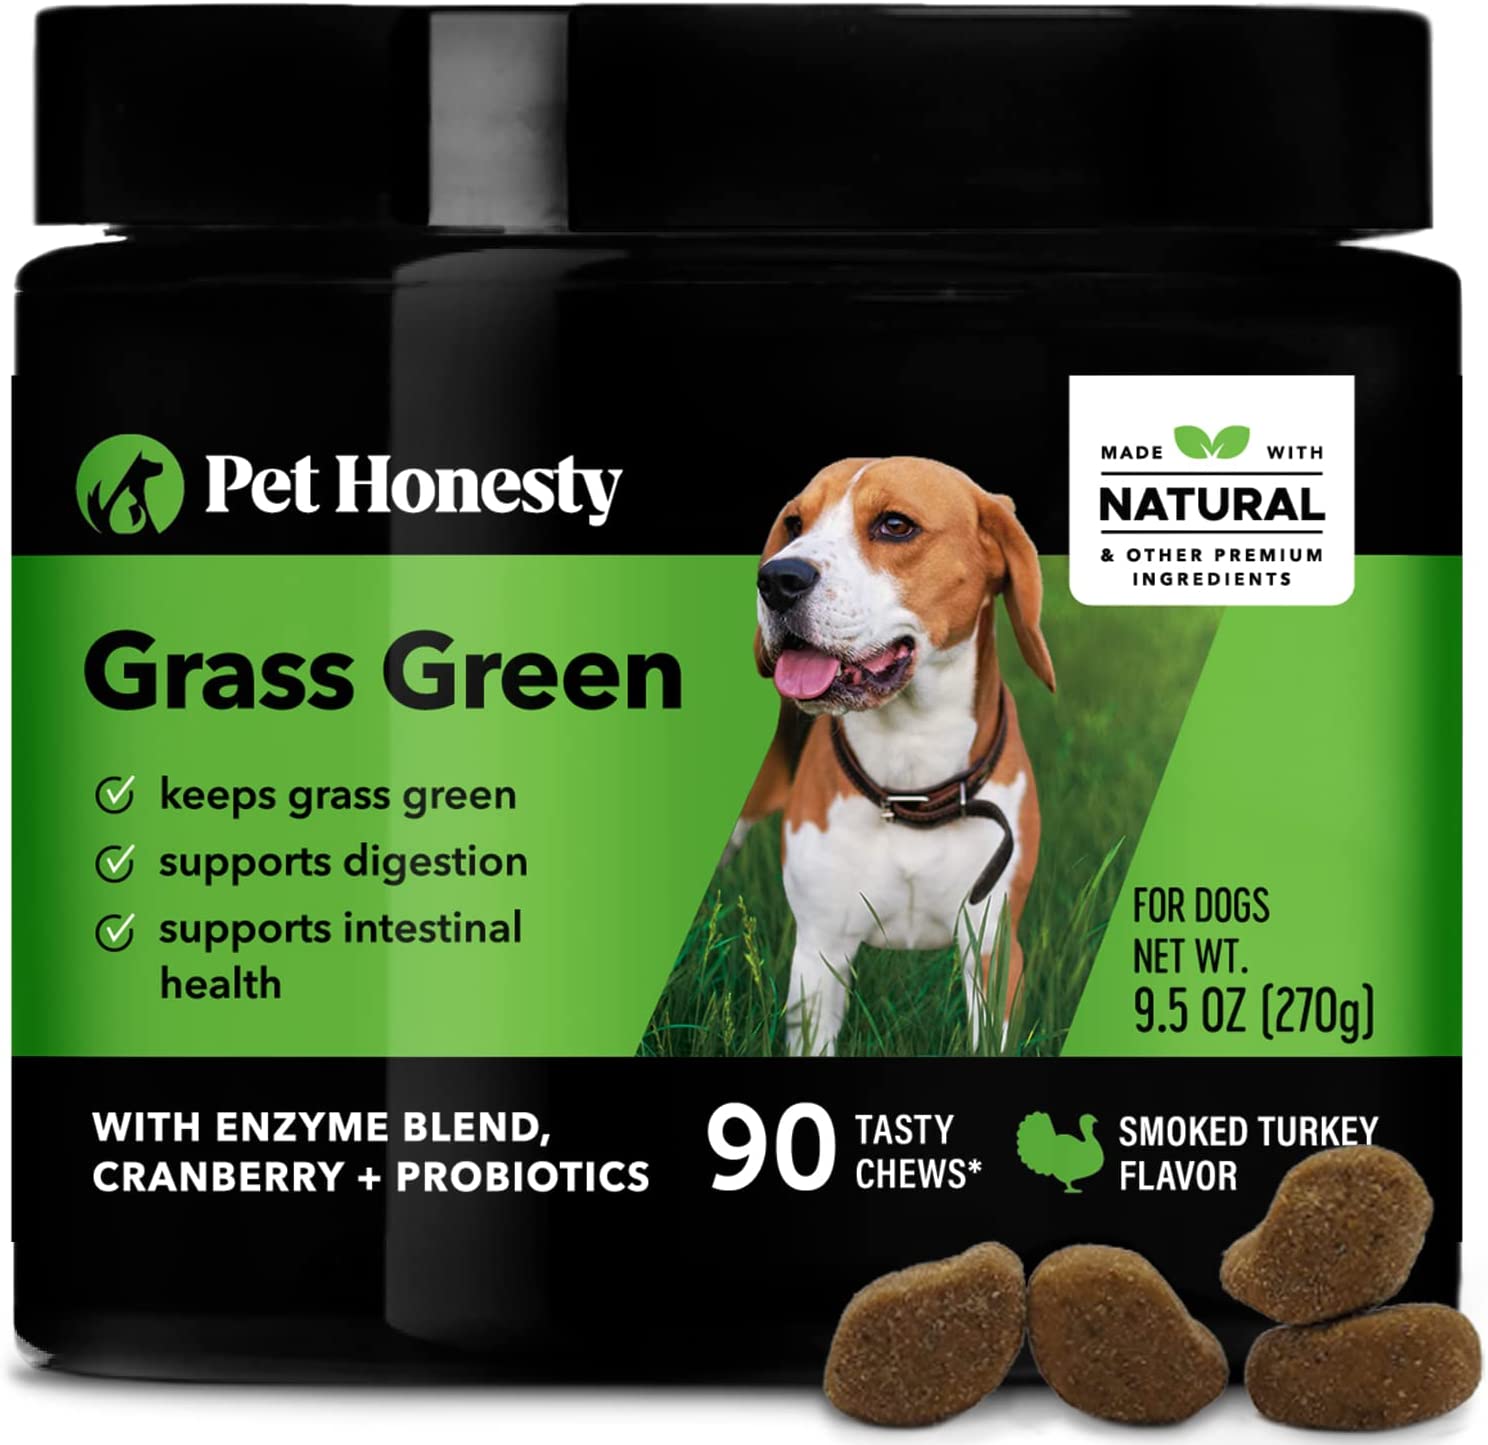 3. PetHonesty Grass Green Burn Spot Chews for Dogs